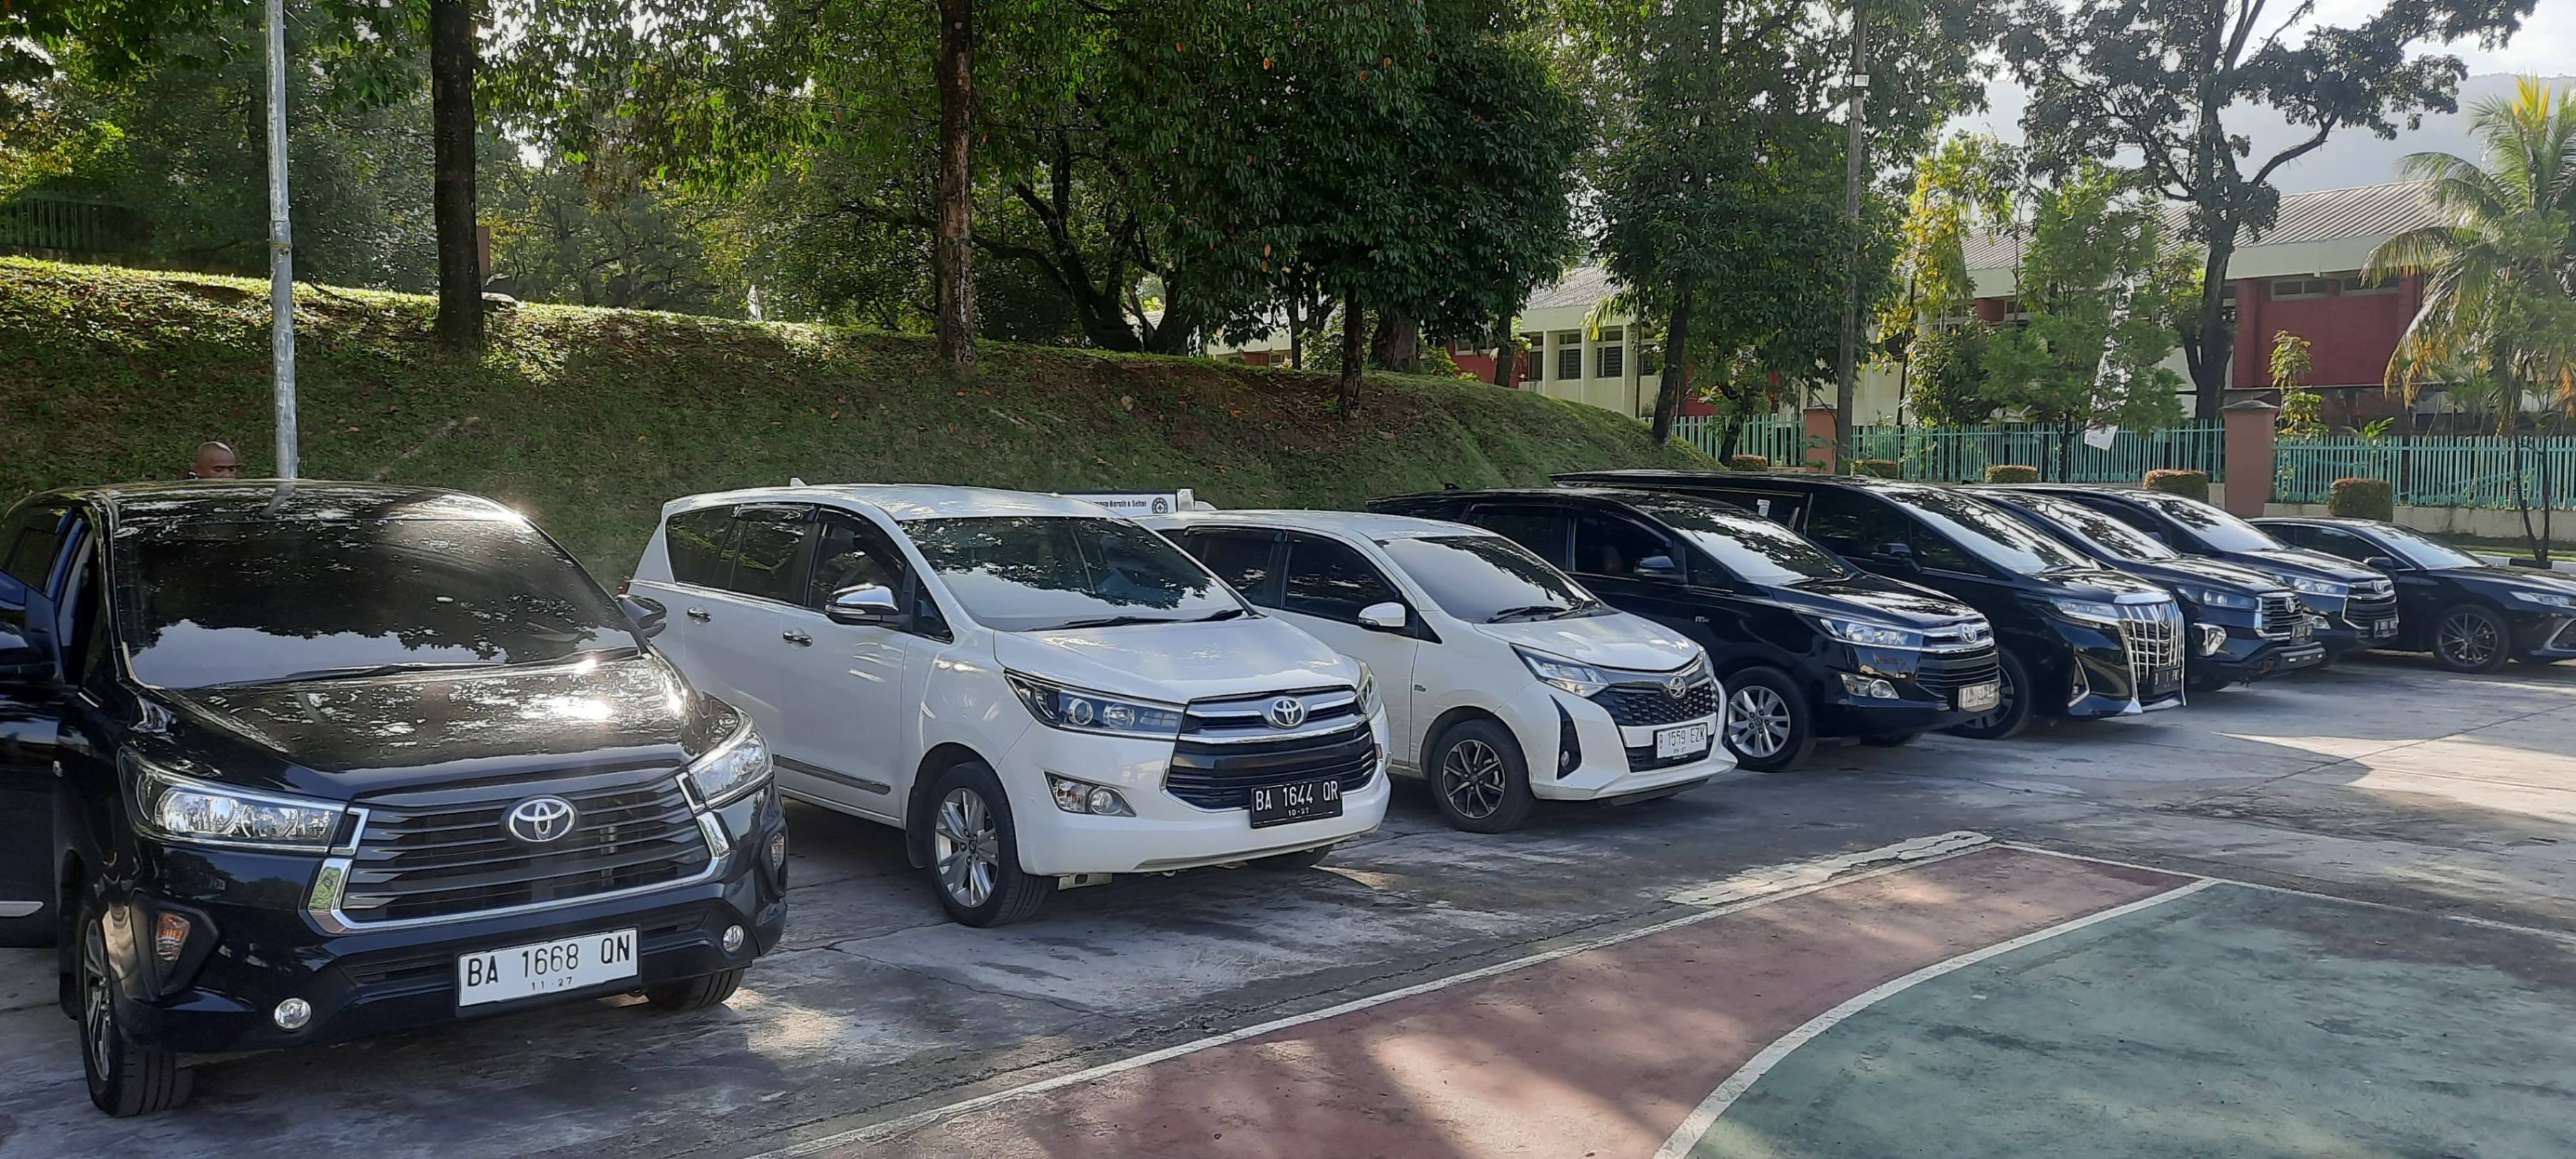 Harga Rental Mobil Di Banda Aceh Terkenal